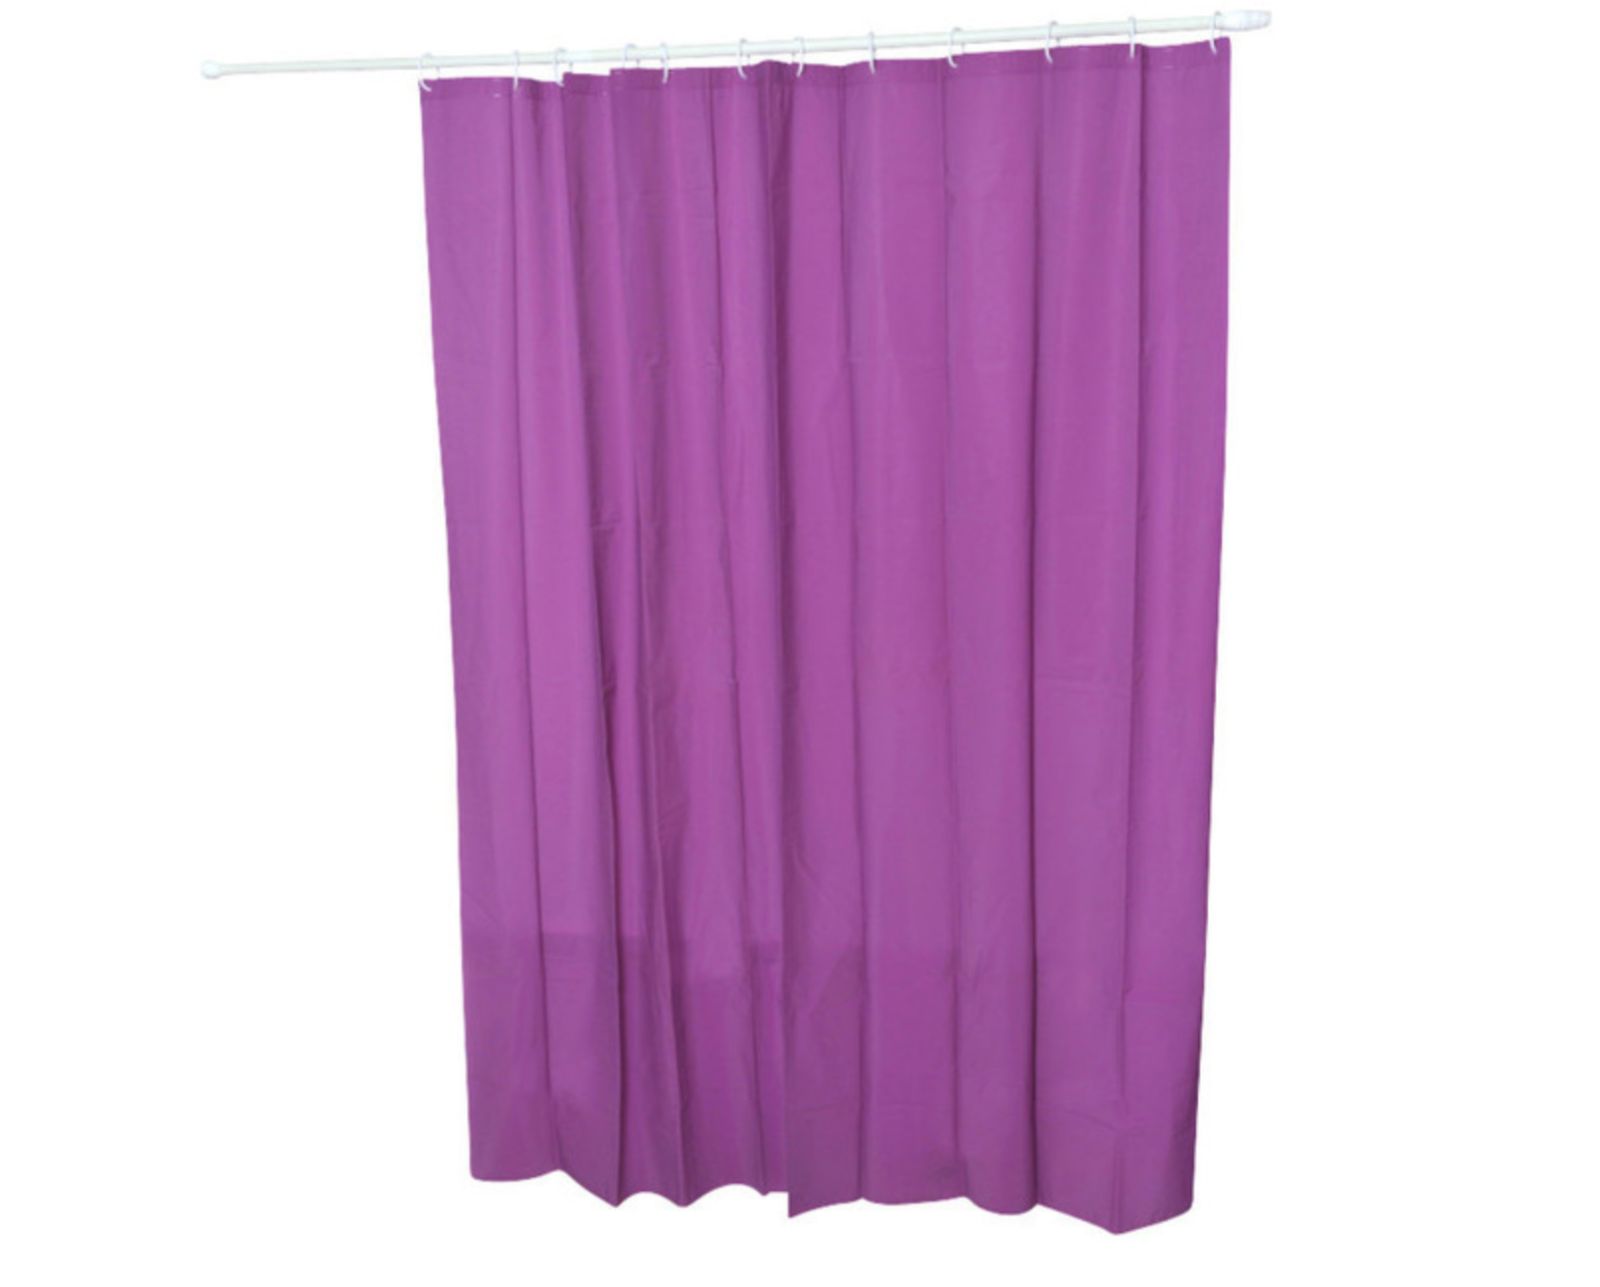 Shower Curtains - Vinyl Shower Curtain Liner - 21 Colors & Patterns - Purple